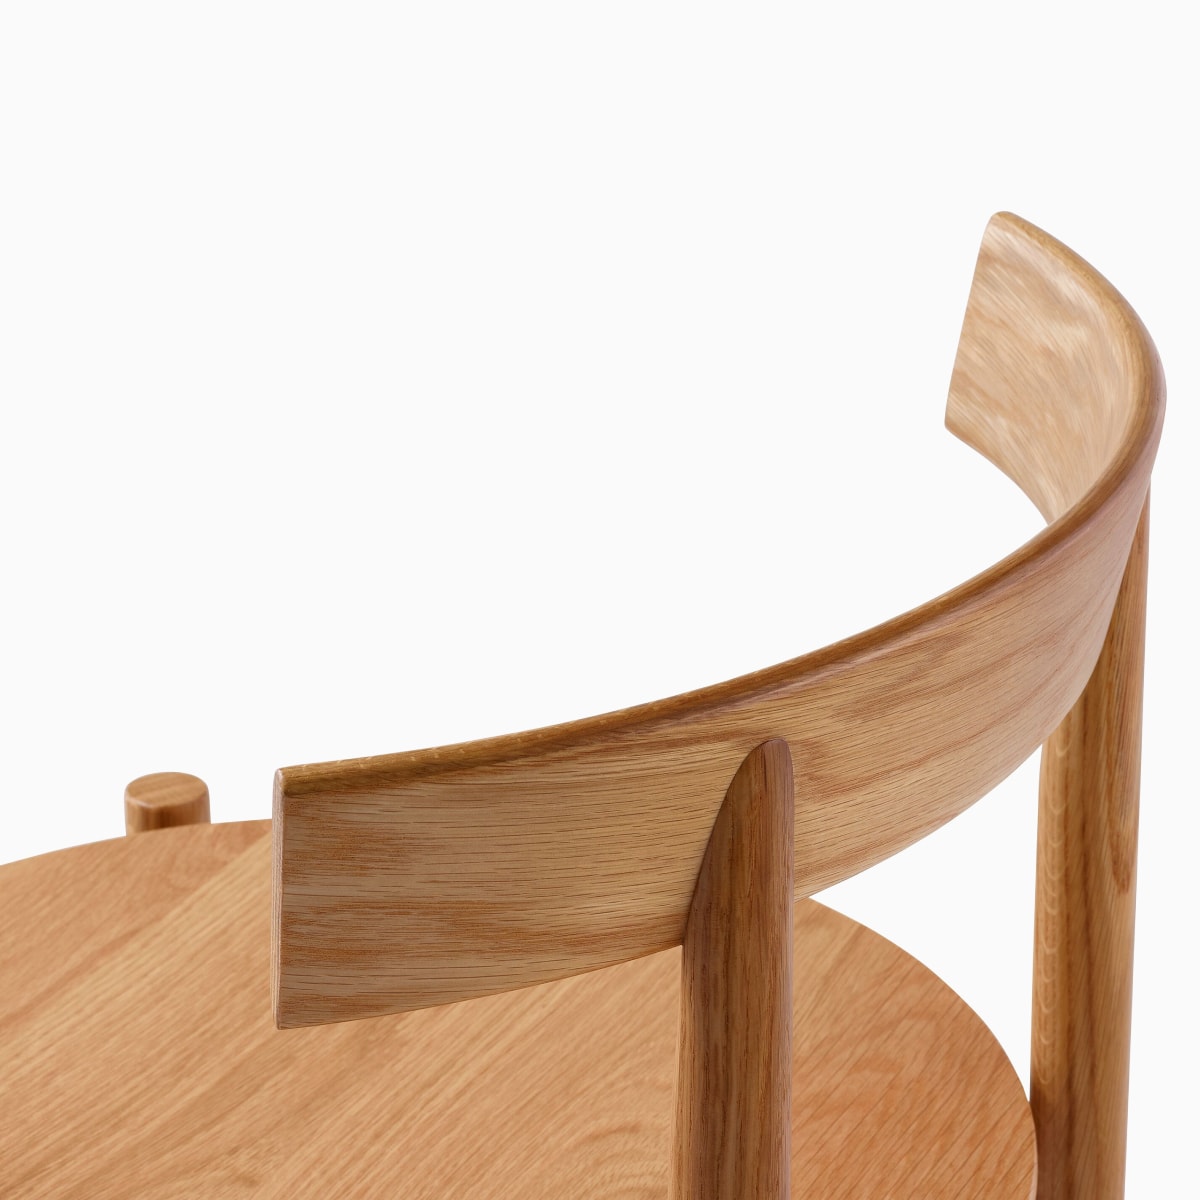 Detailansicht eines Comma Stuhls an der Stelle, wo Rückenlehne und Rahmen zusammentreffen.